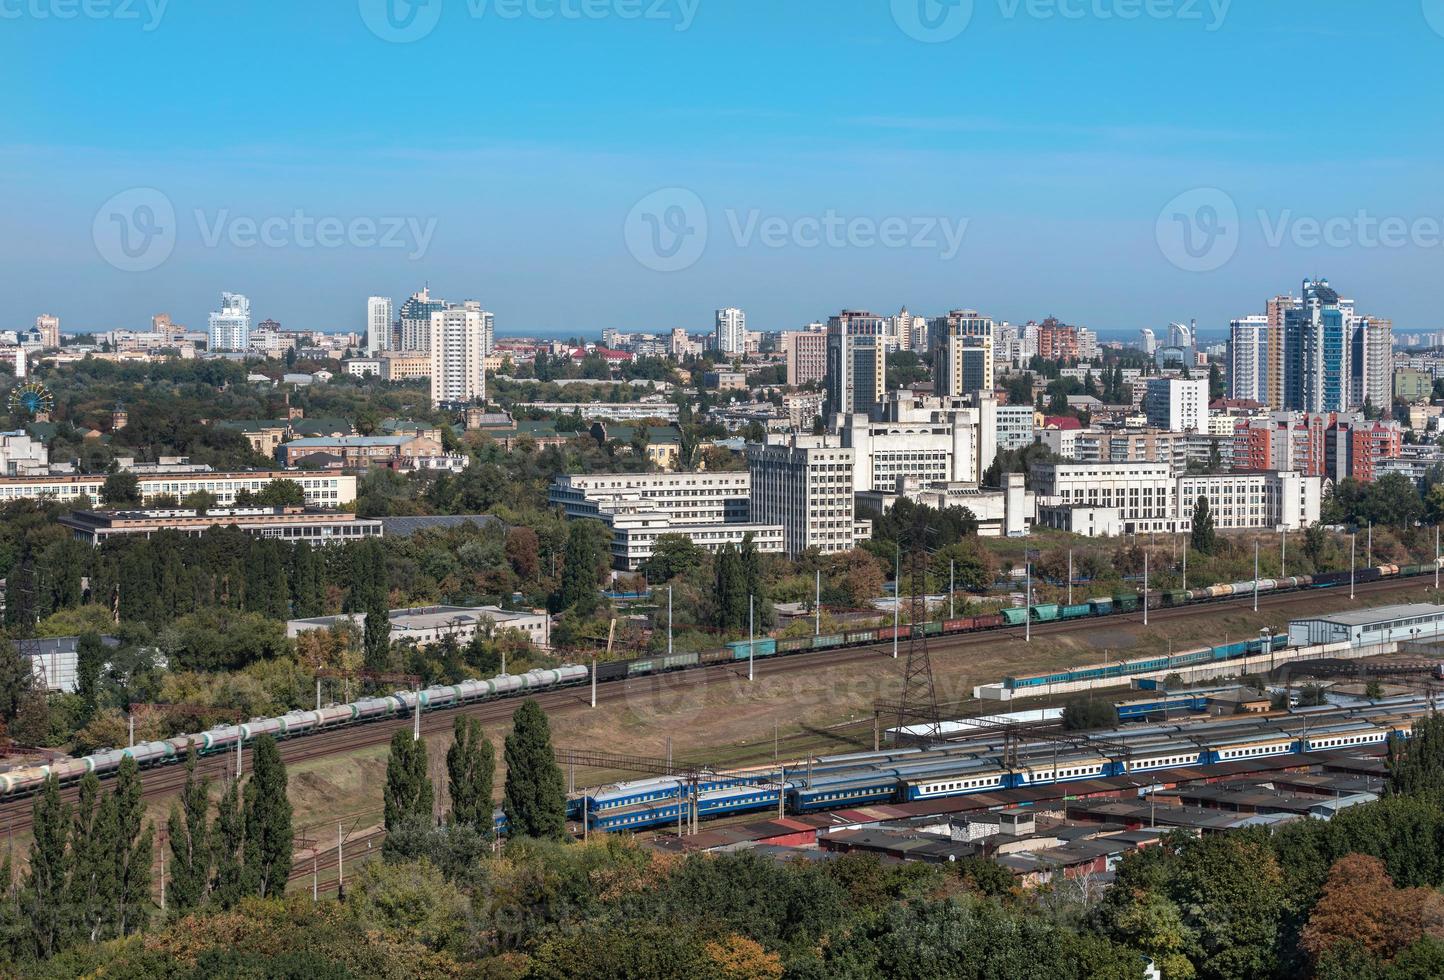 kiev, Ukraina, stadsbild, utsikt över järnvägsknuten och yrkeshögskolan foto